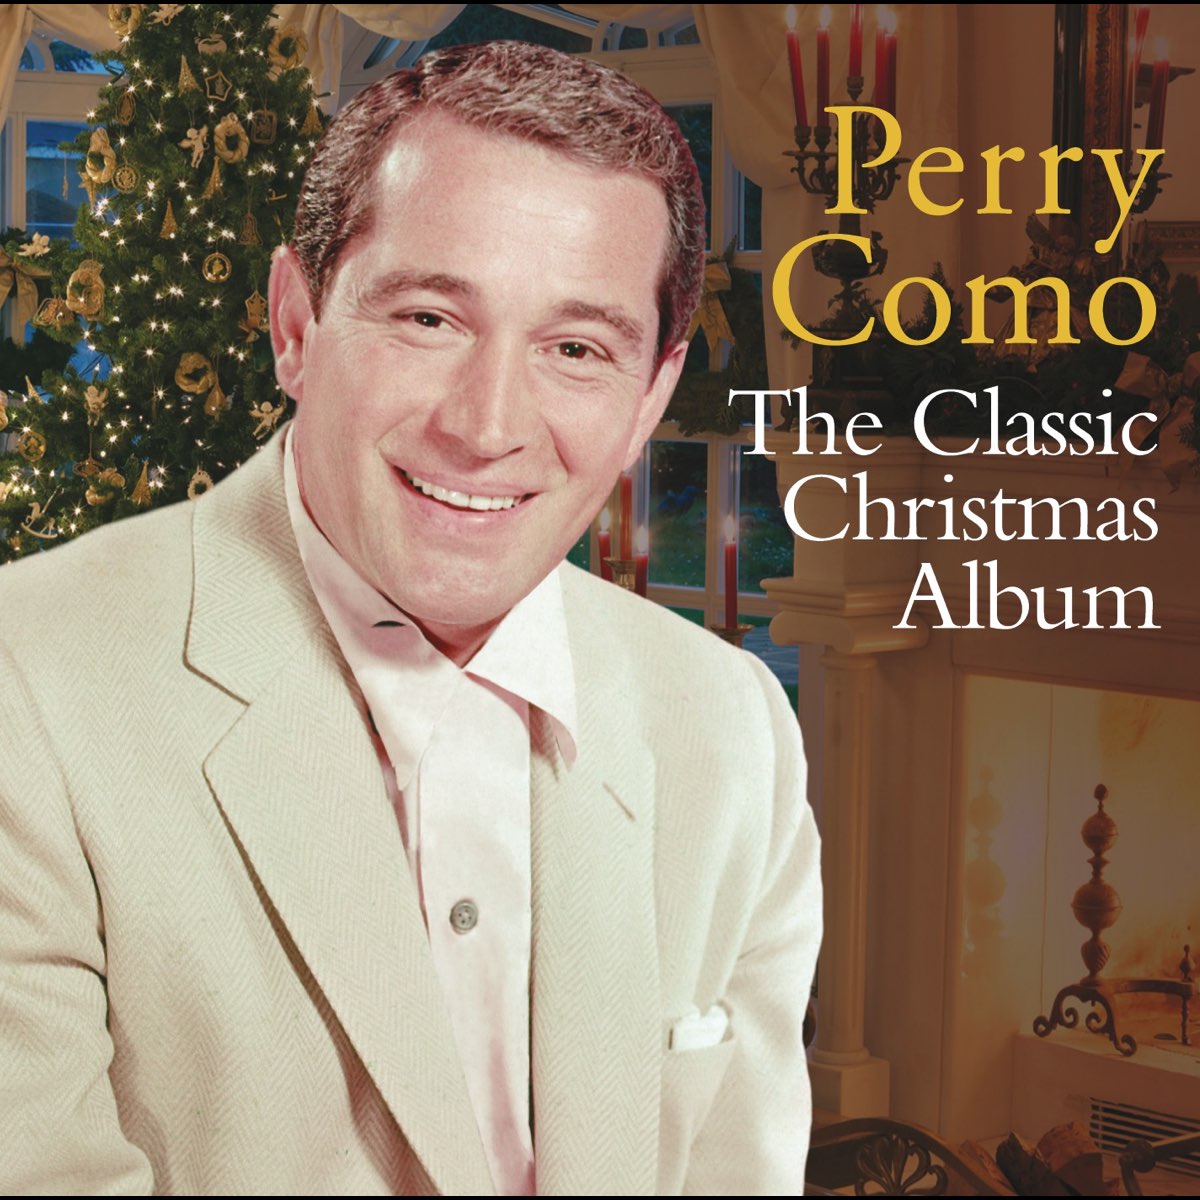 ‎The Classic Christmas Album - Album by Perry Como - Apple Music